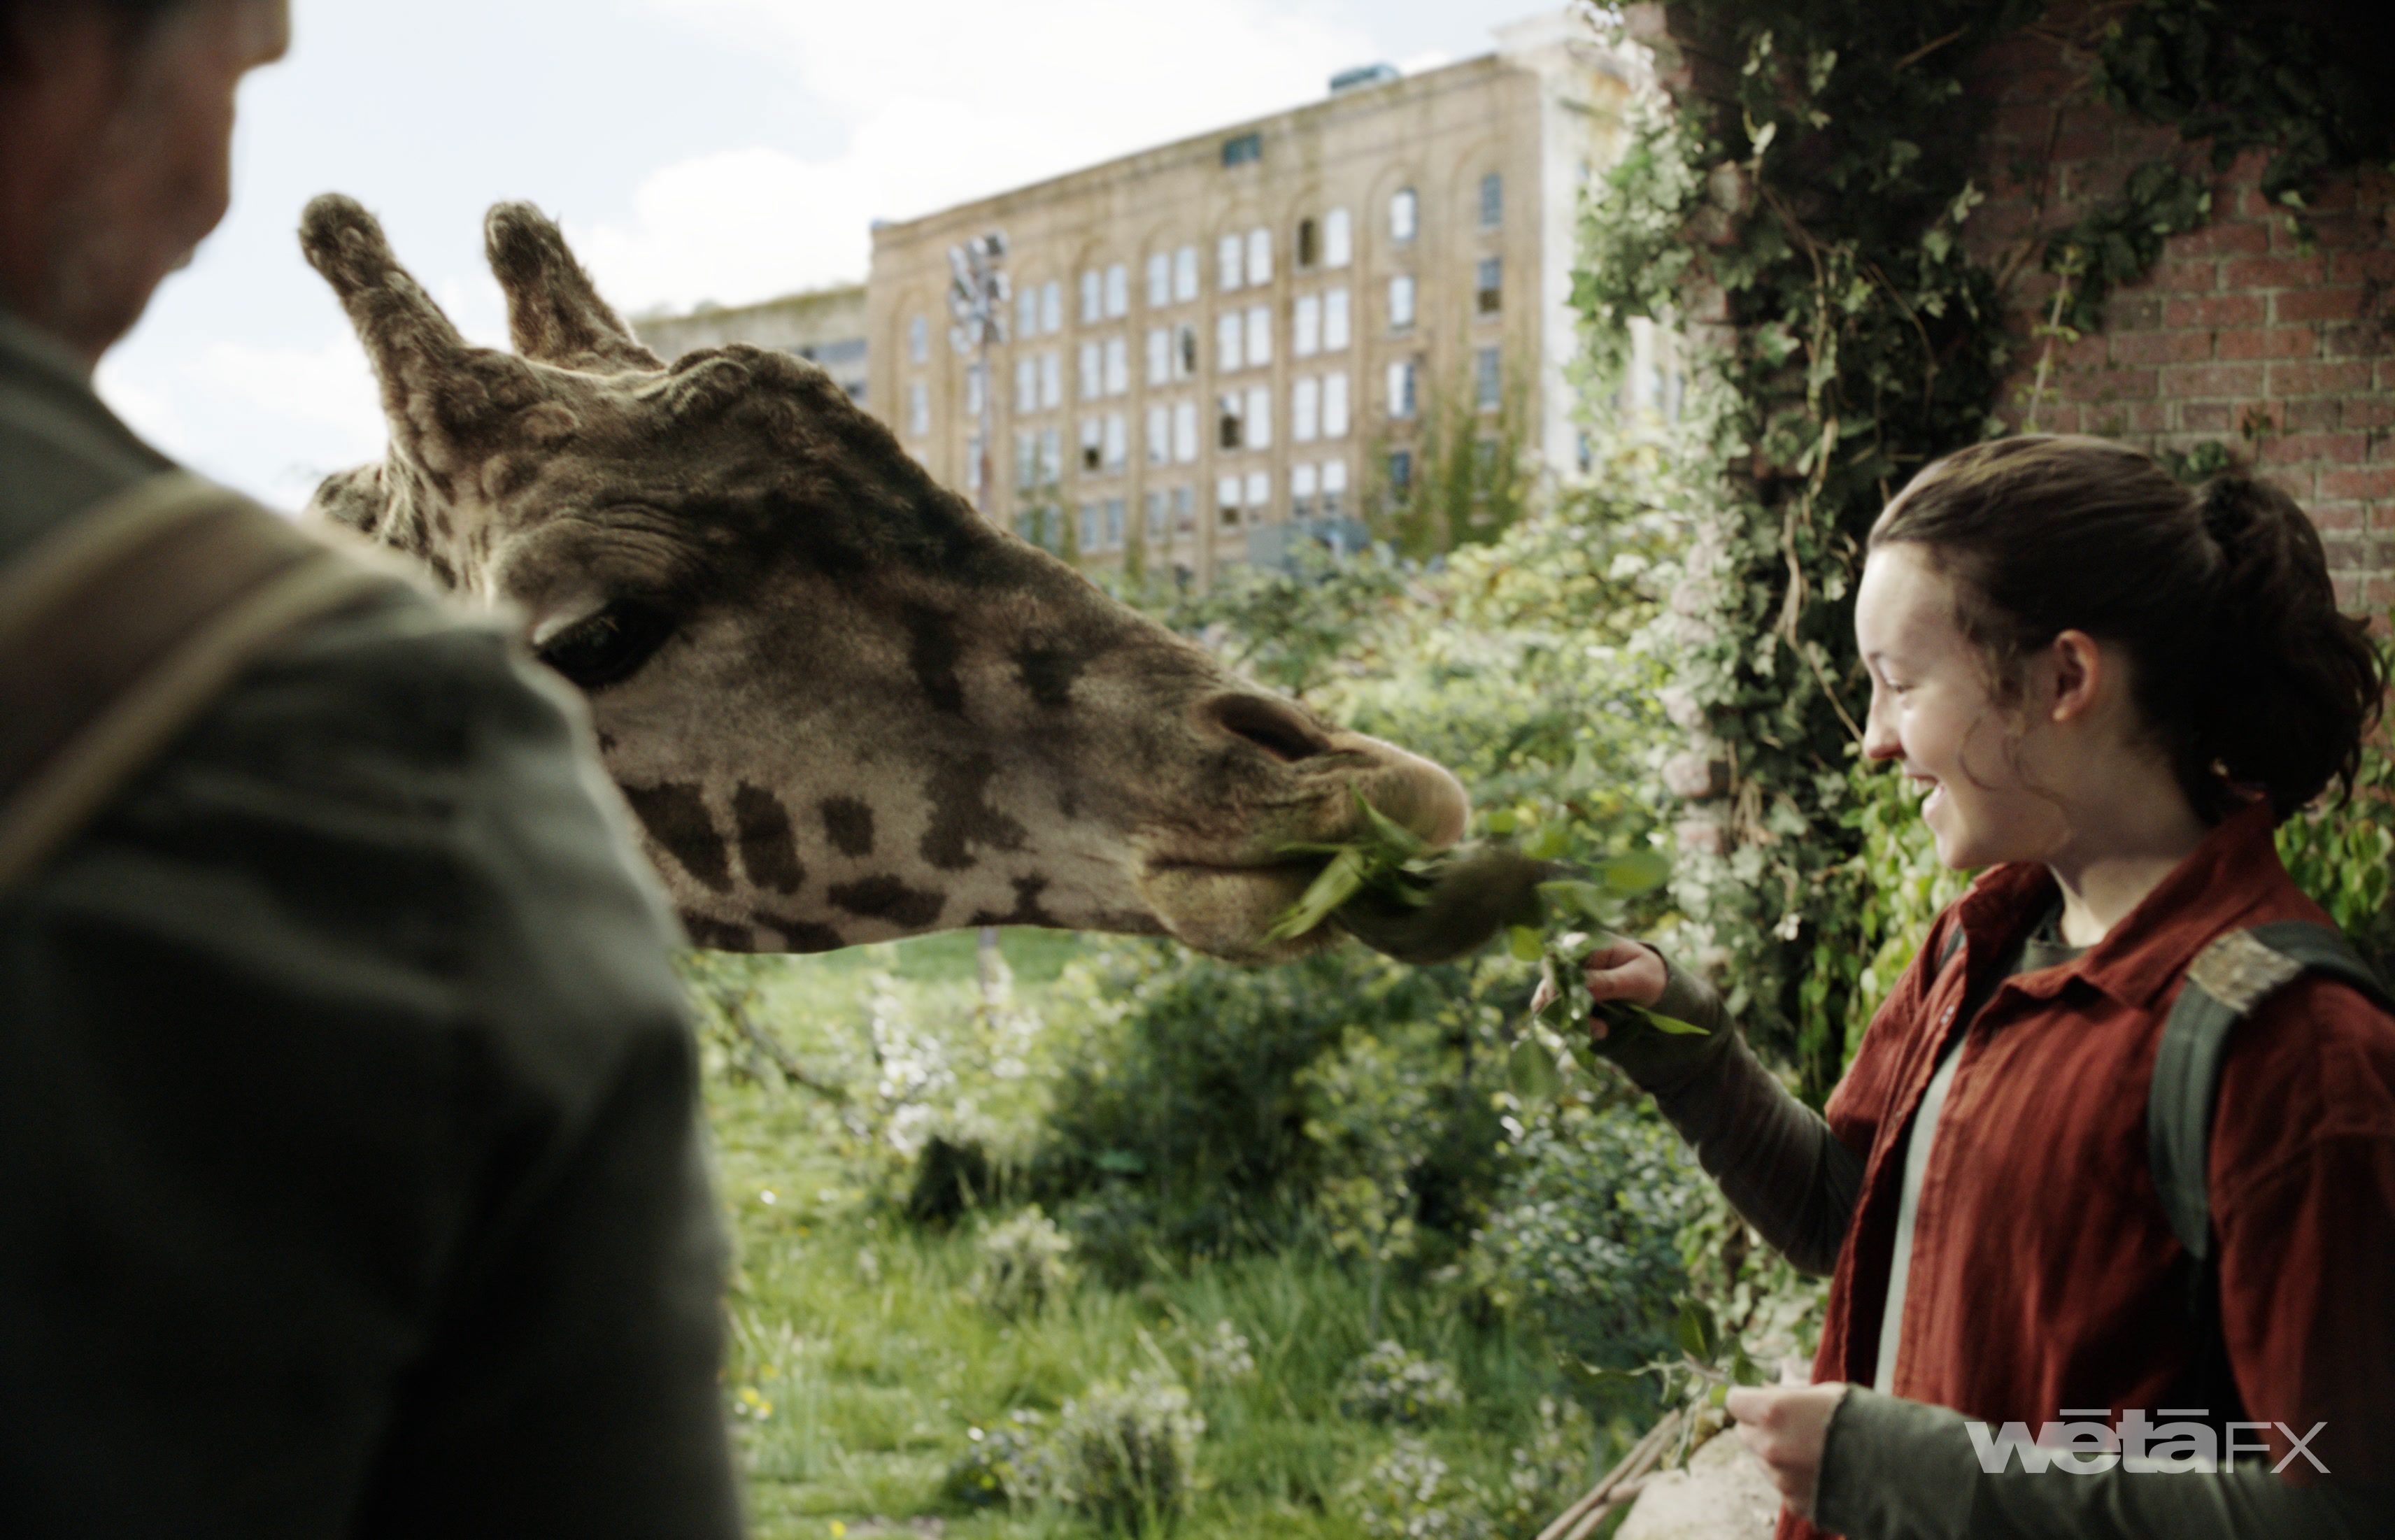 Ellie nourrit une girafe dans la version finale de la scène de la girafe dans le final de la saison 1 de The Last of Us.